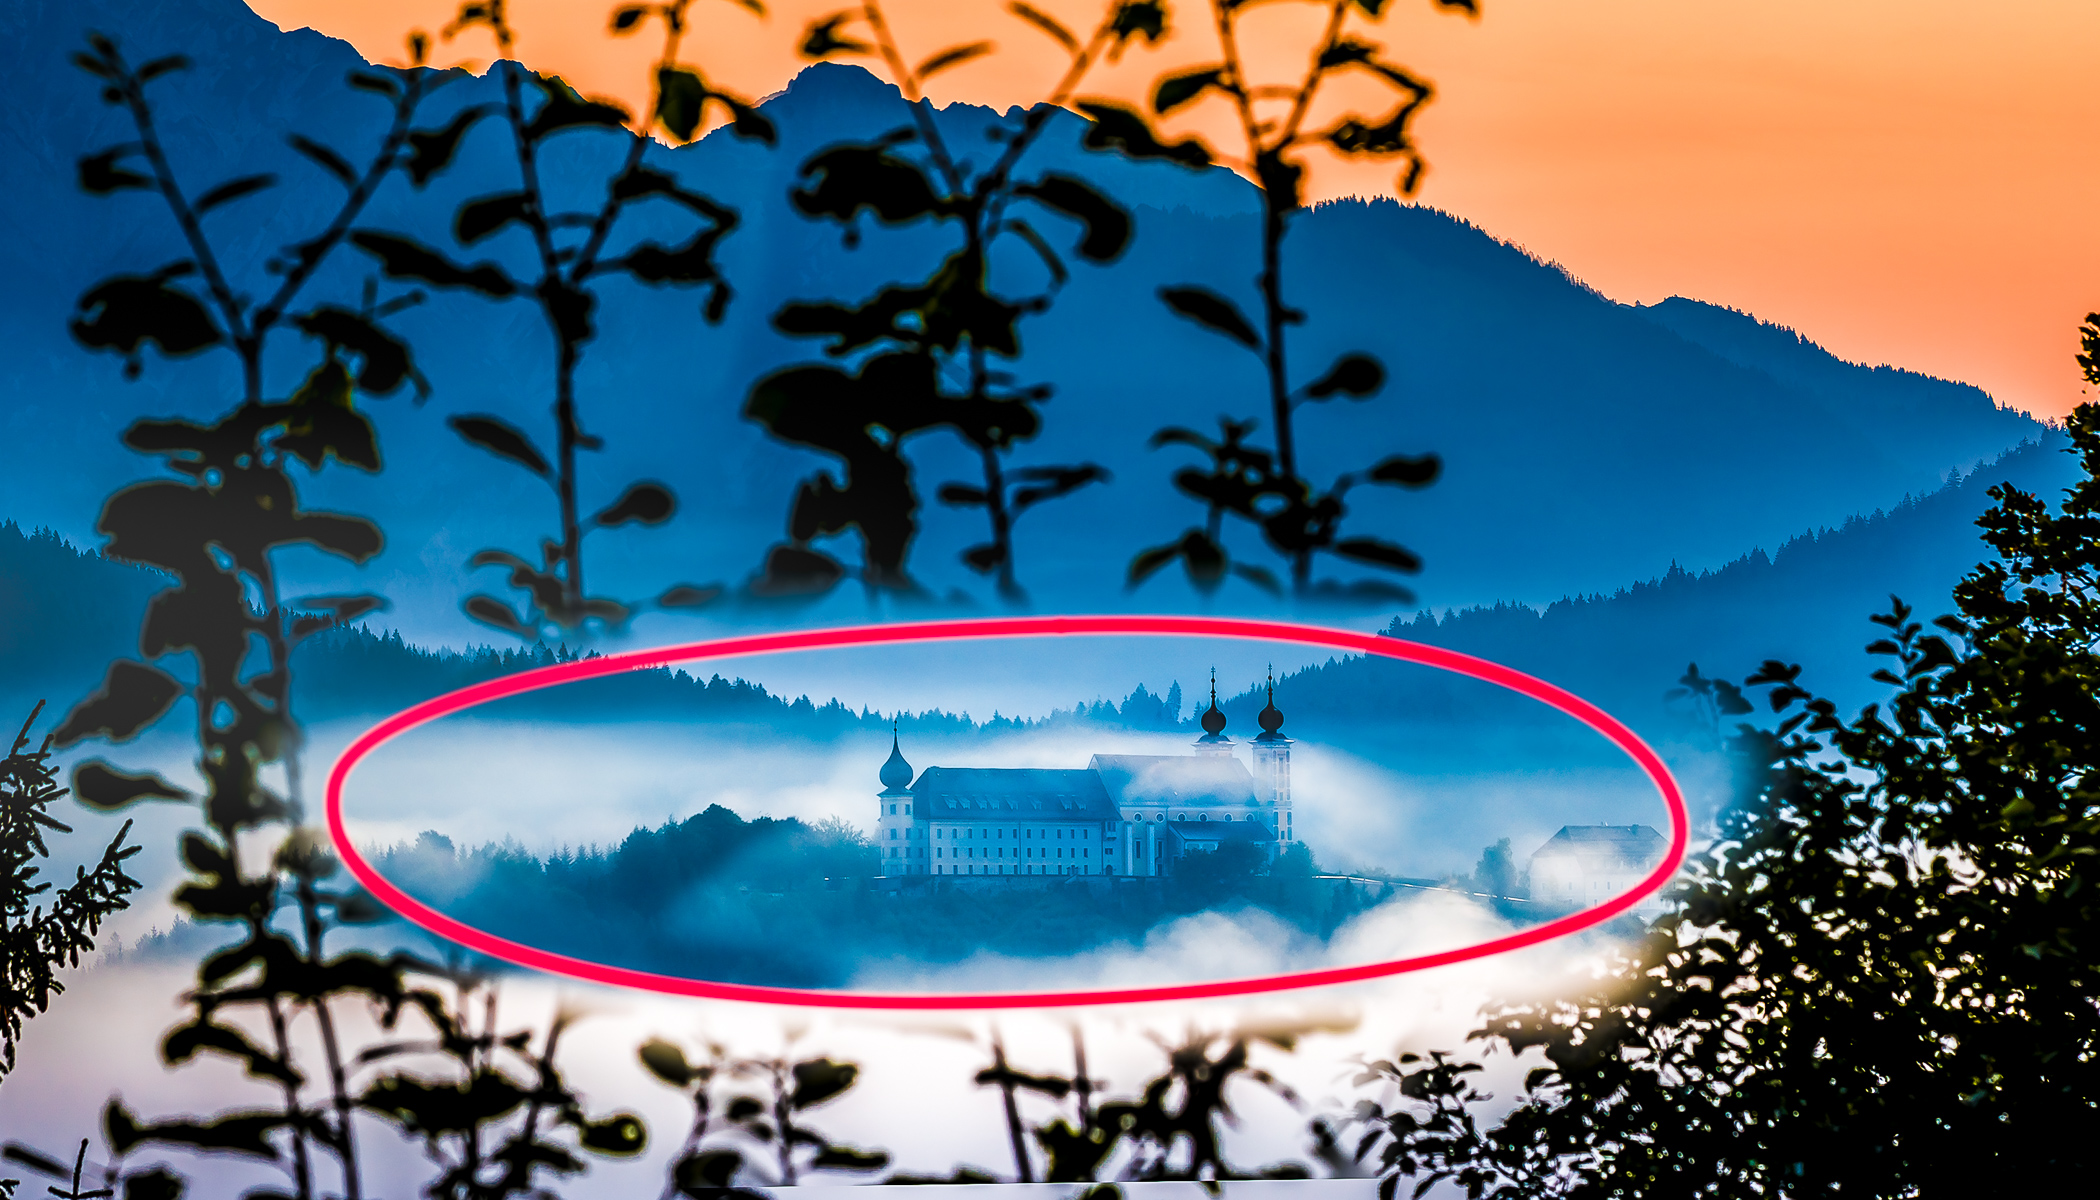 Geschichte eines Fotos Wallfahrtskirche über dem Nebel